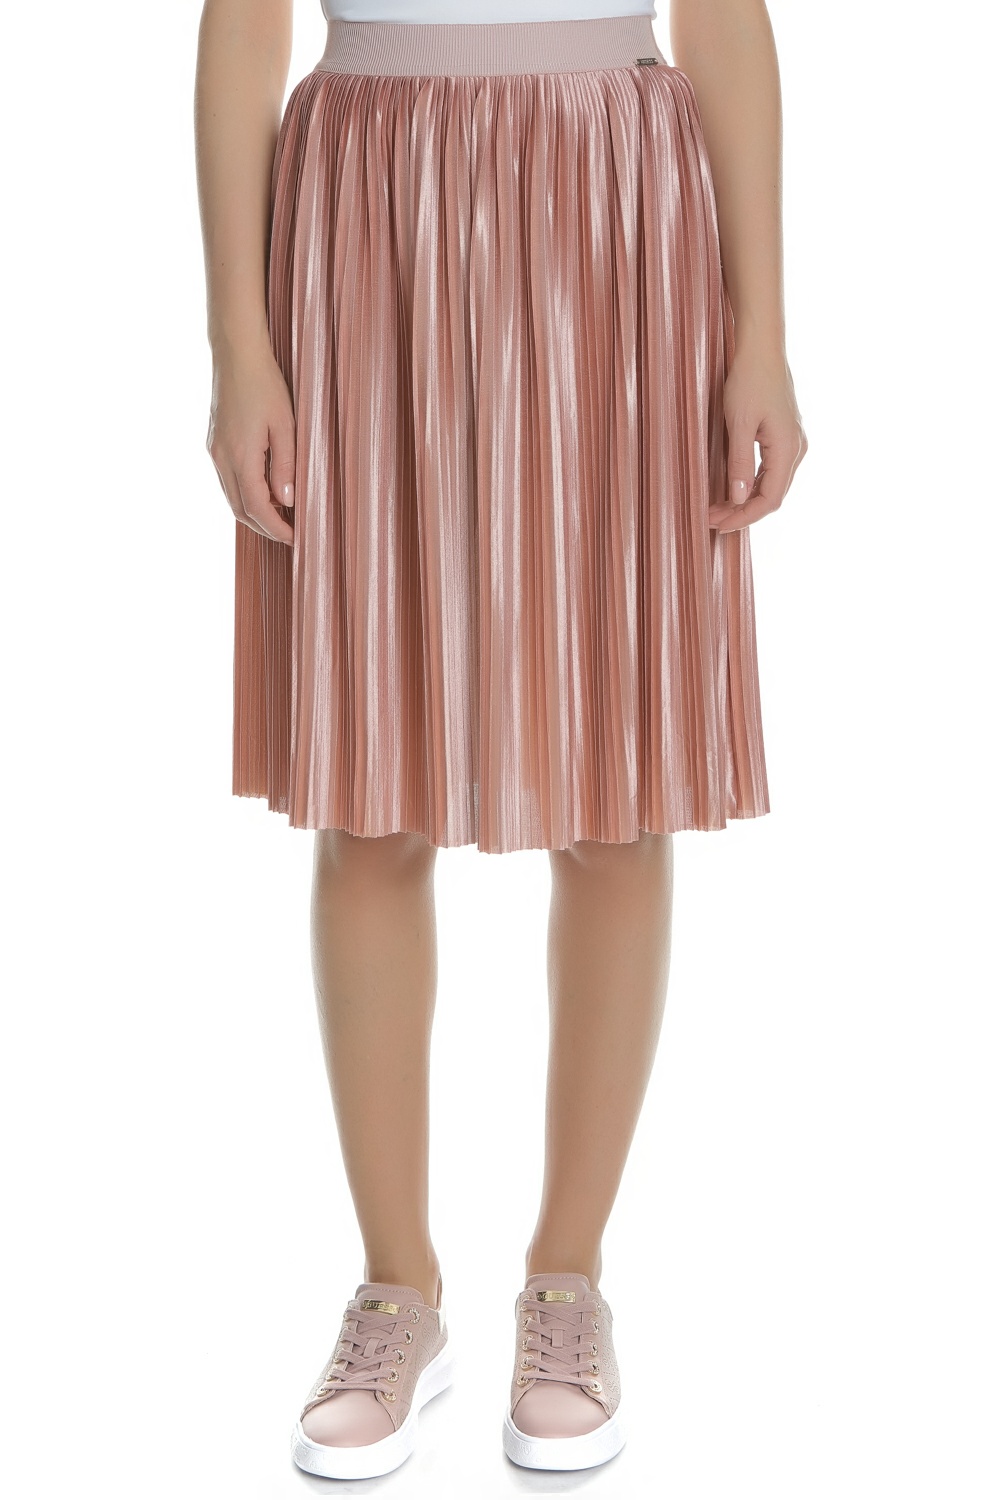 GUESS - Γυναικεία midi πλισέ φούστα ADELE GUESS ροζ Γυναικεία/Ρούχα/Φούστες/Μέχρι το γόνατο